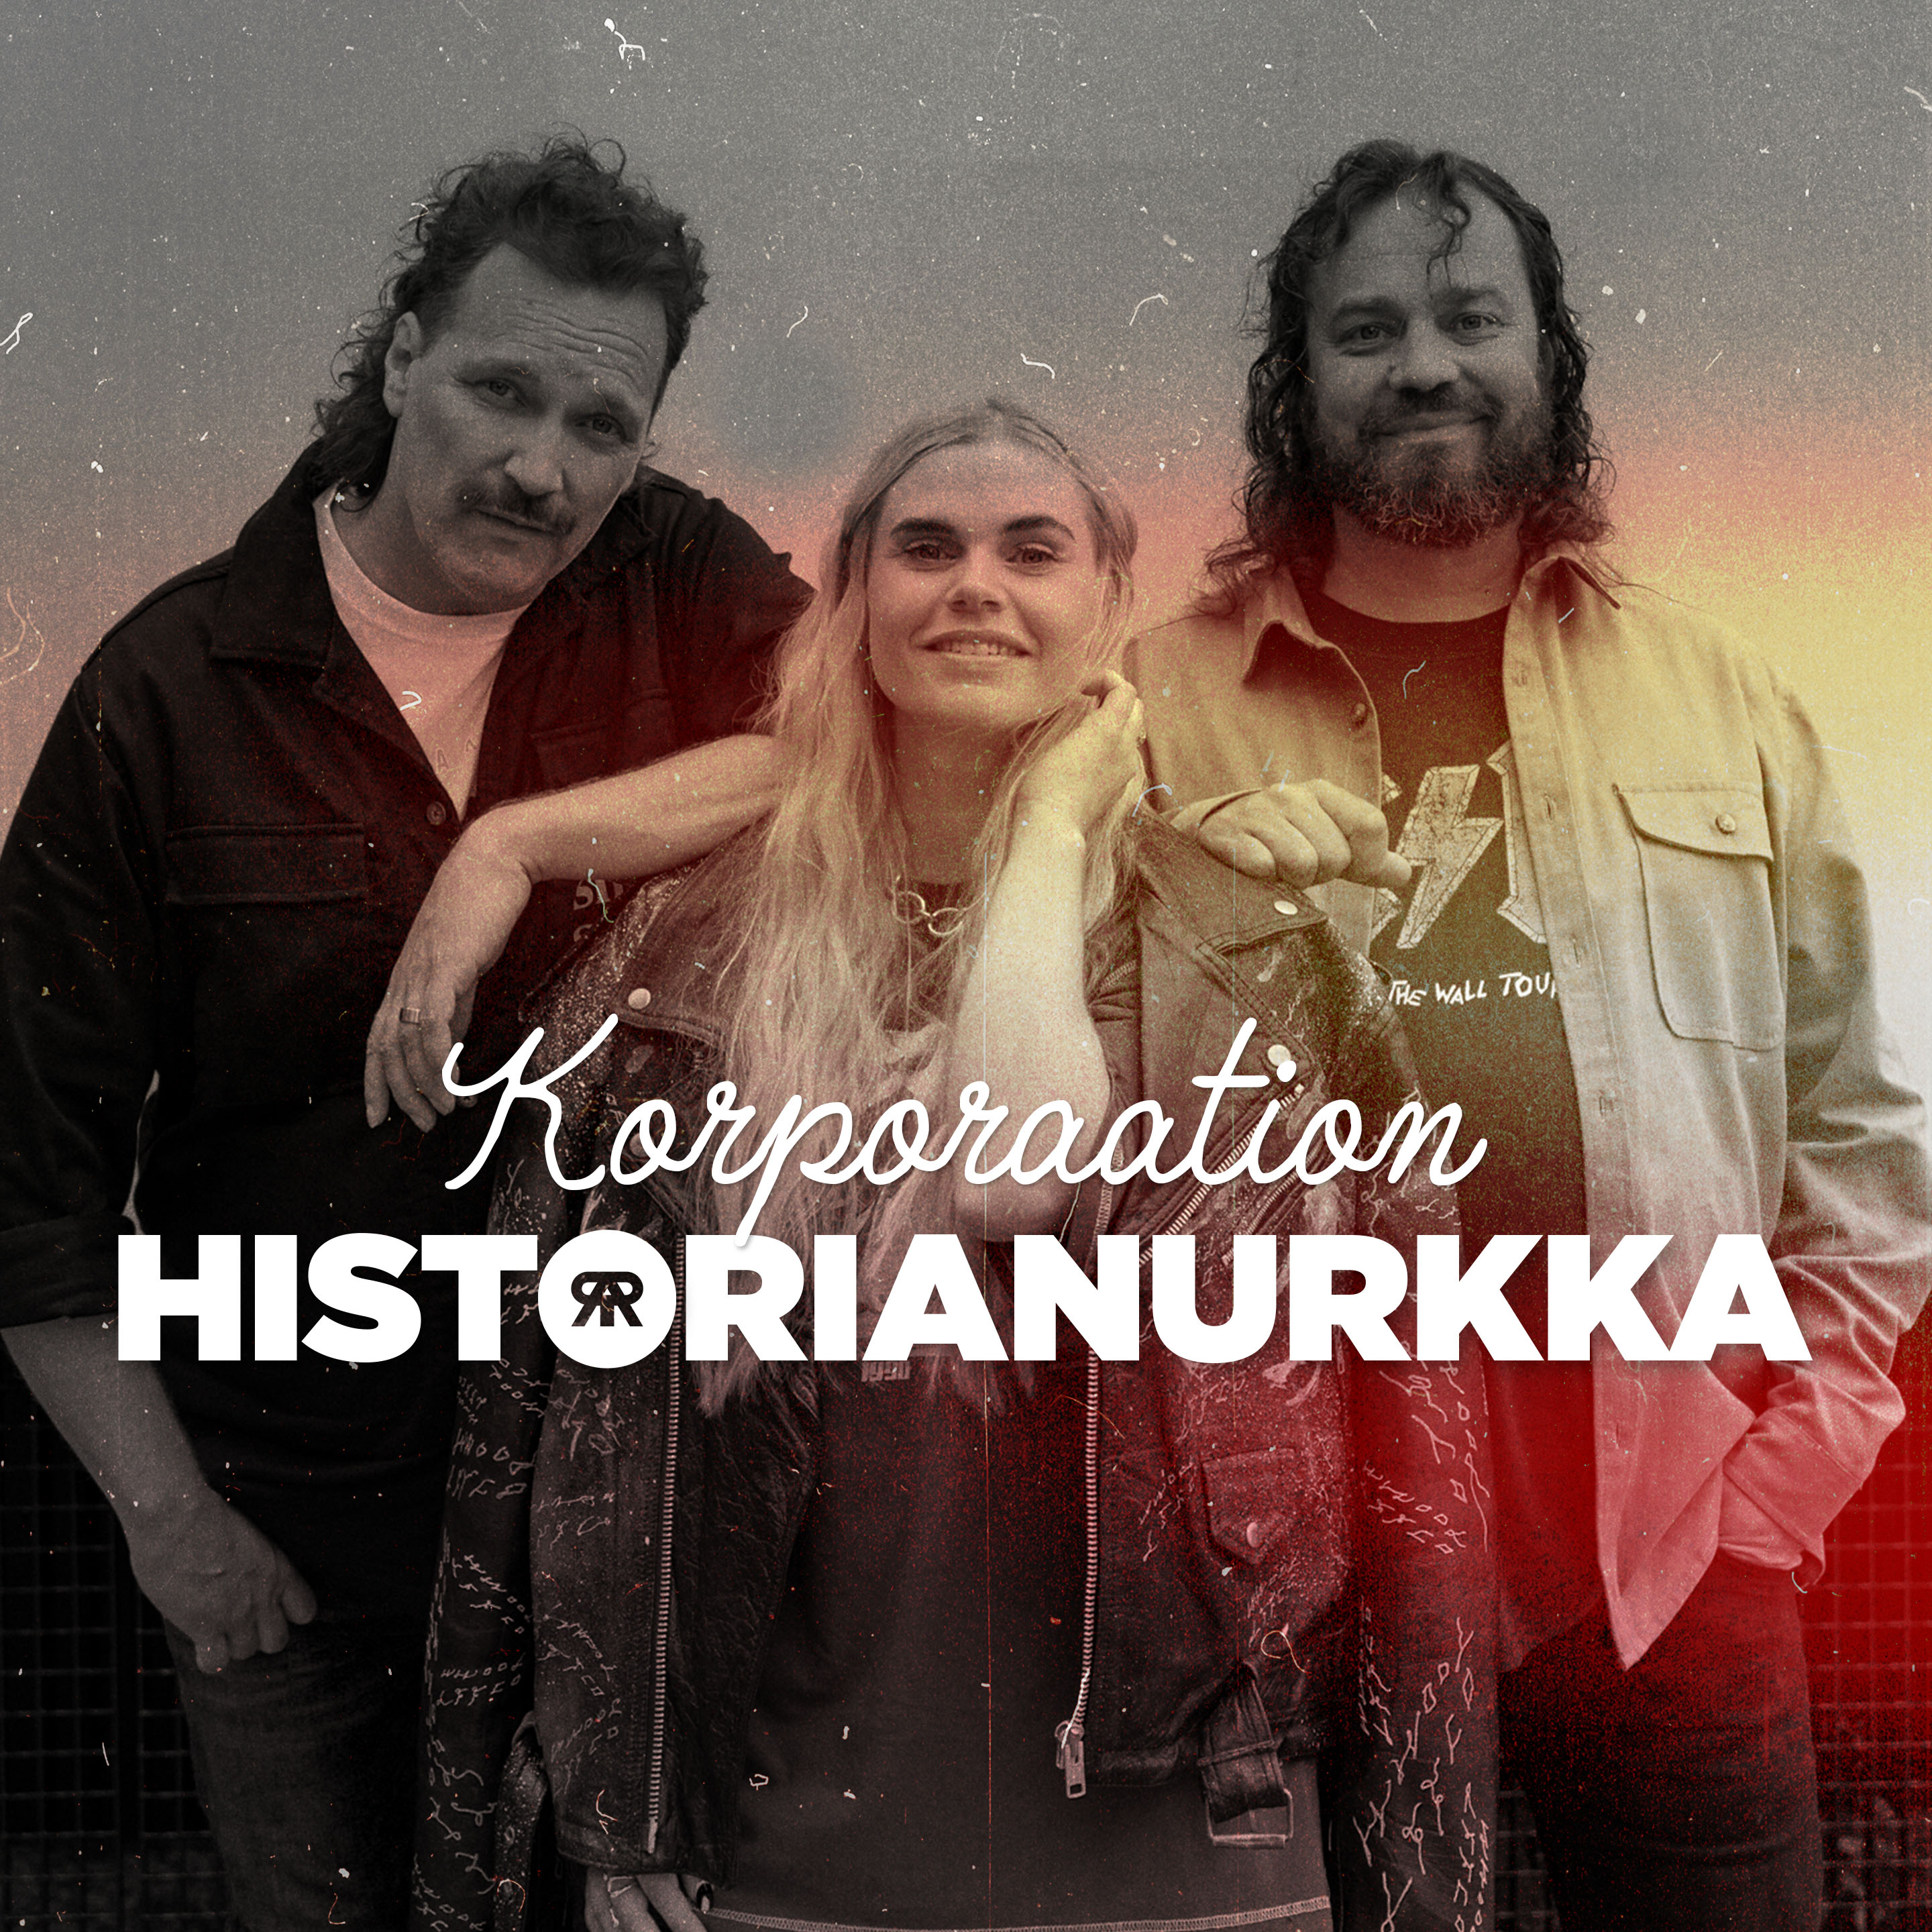 Historianurkka 16.5.1983 - Juhlan aika!